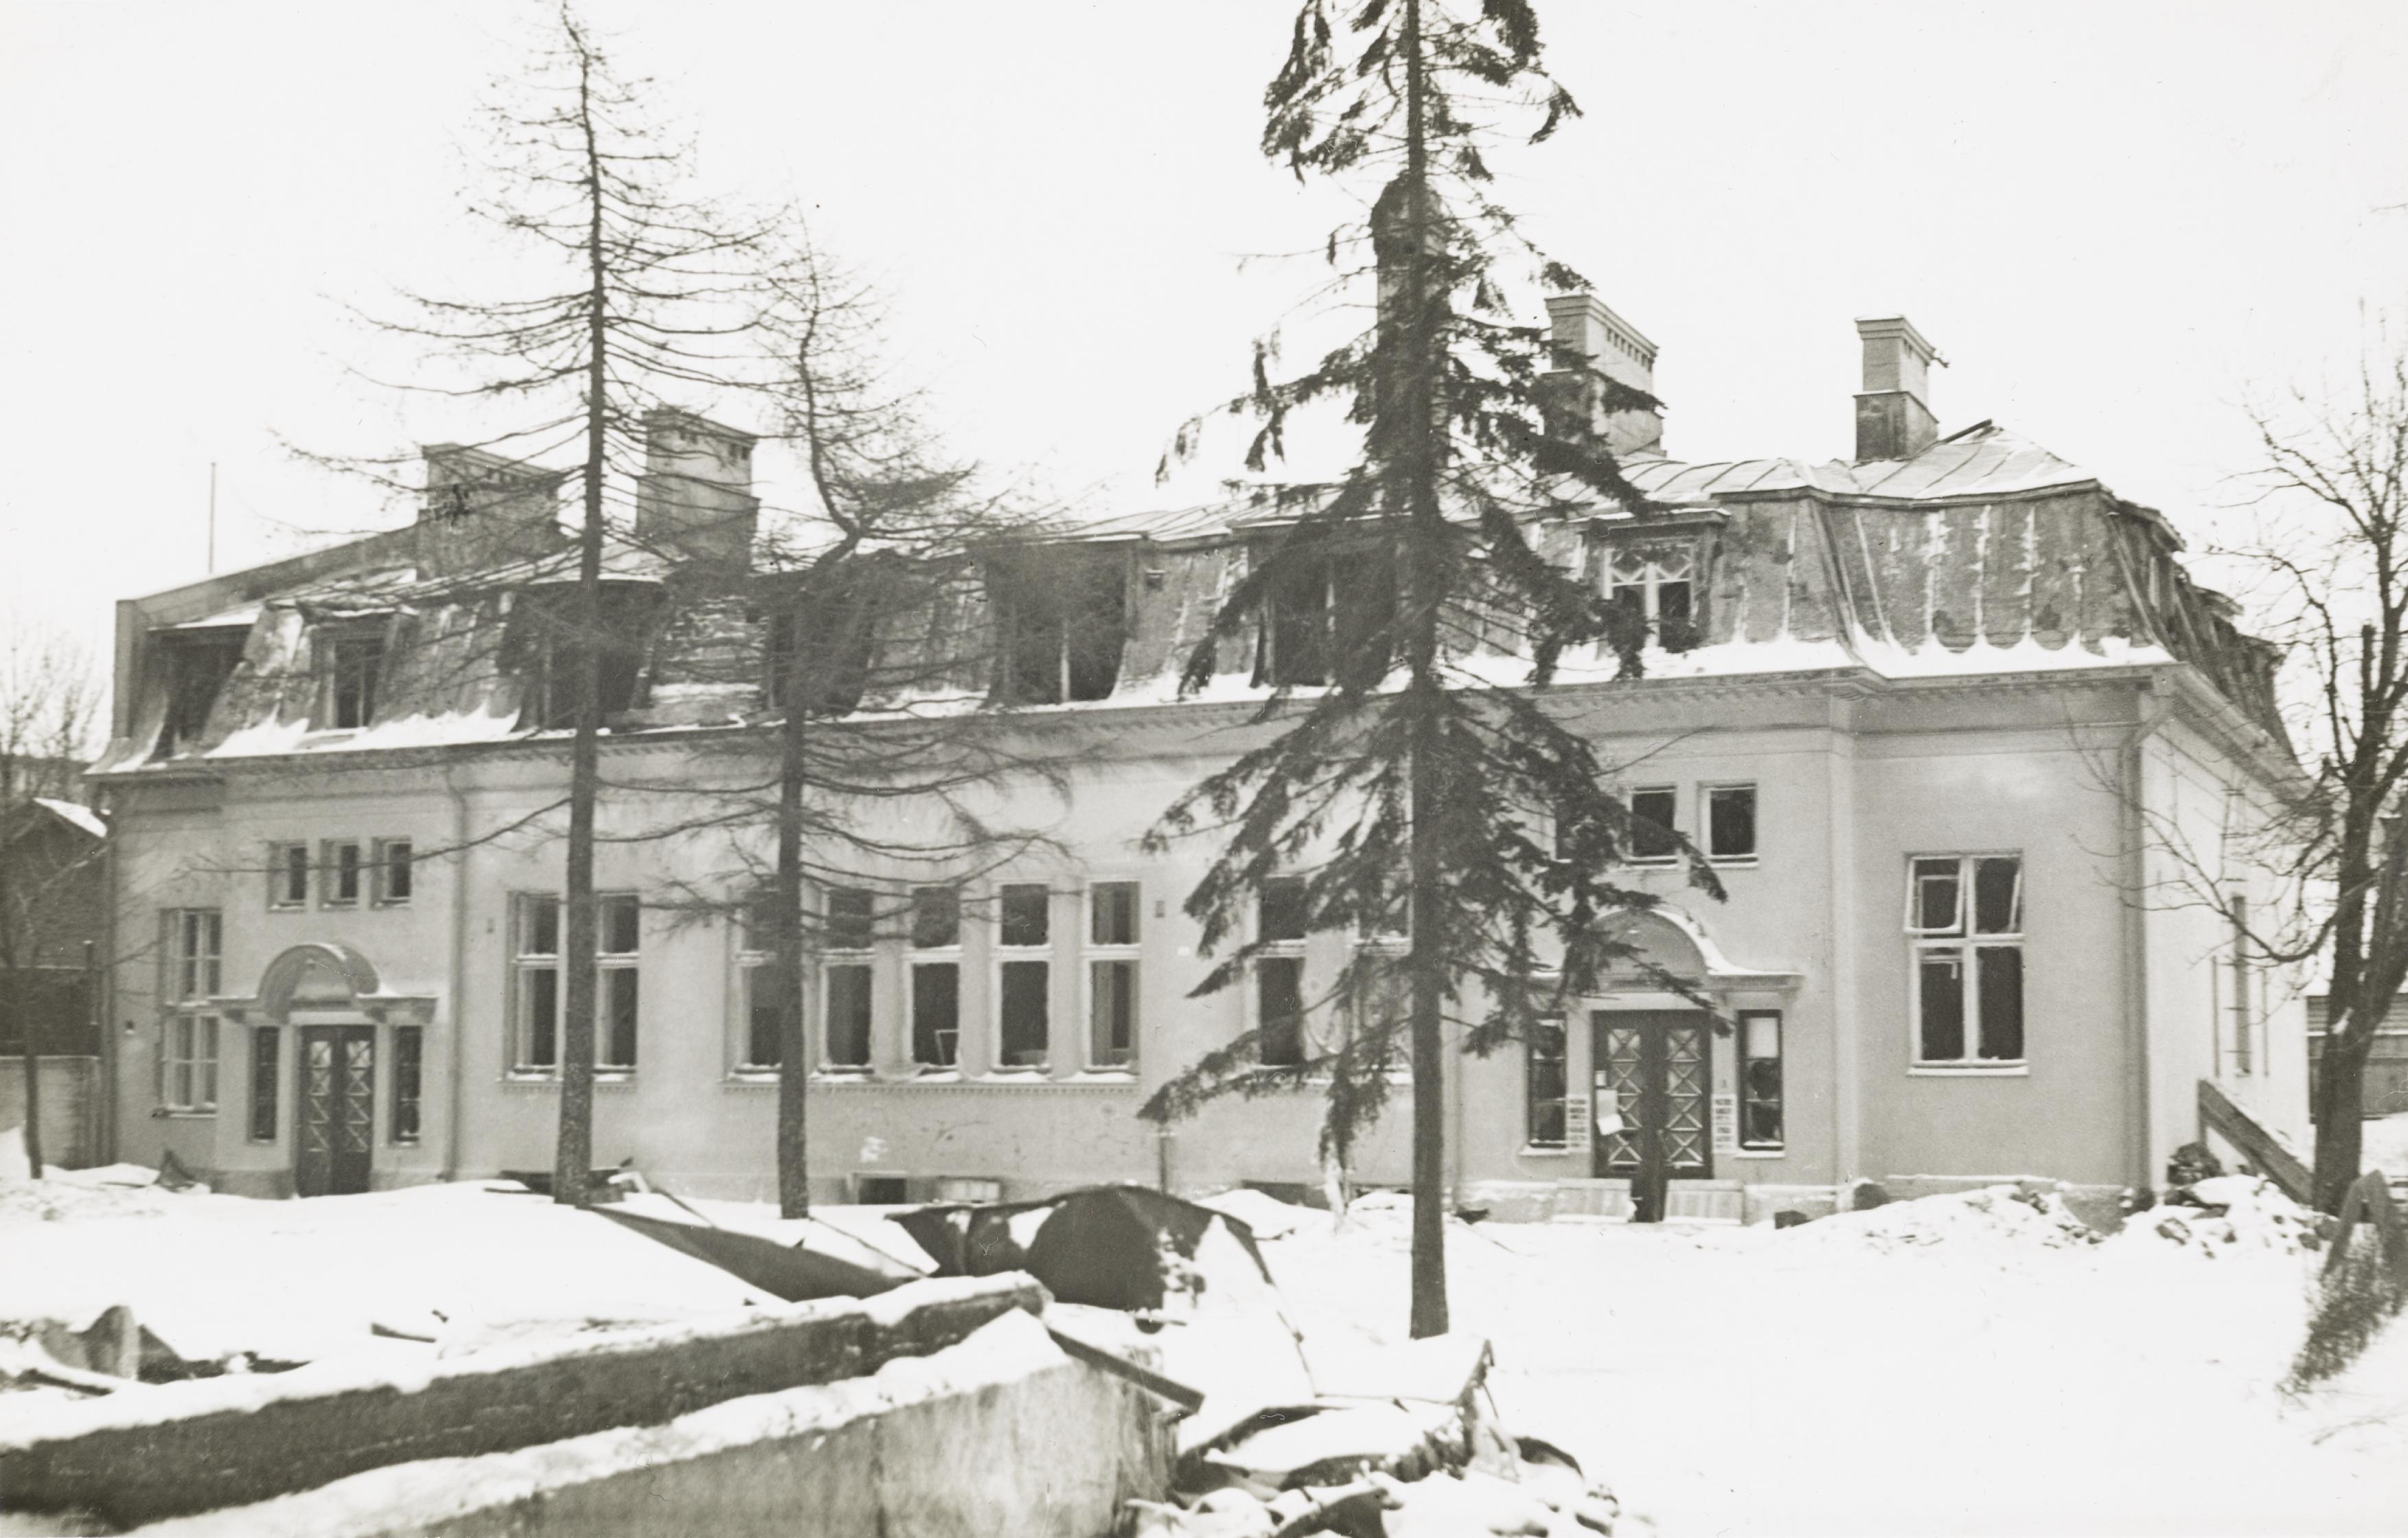 Mustavalkoisessa valokuvassa juuri valmistunut kaksikerroksinen, vaalea mansardikattoinen rakennus ja muutamia puita sekä lunta maassa.